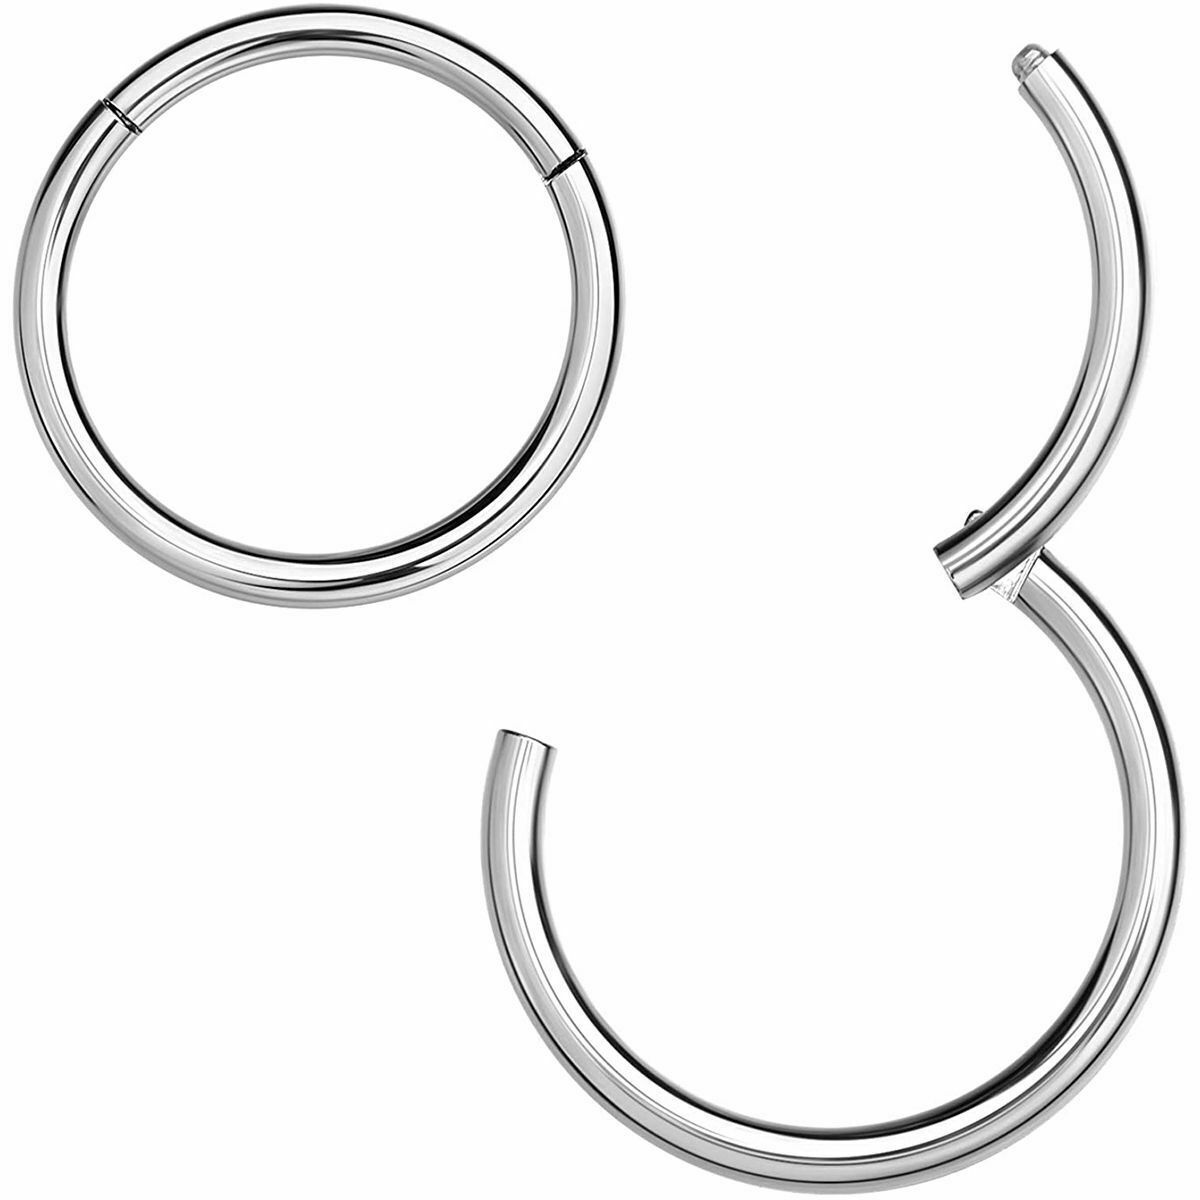 Hinged ring 14 Gauge 3/8 10mm Steel Body Jewelry Lip Ear Piercing Earrings 2 pcs